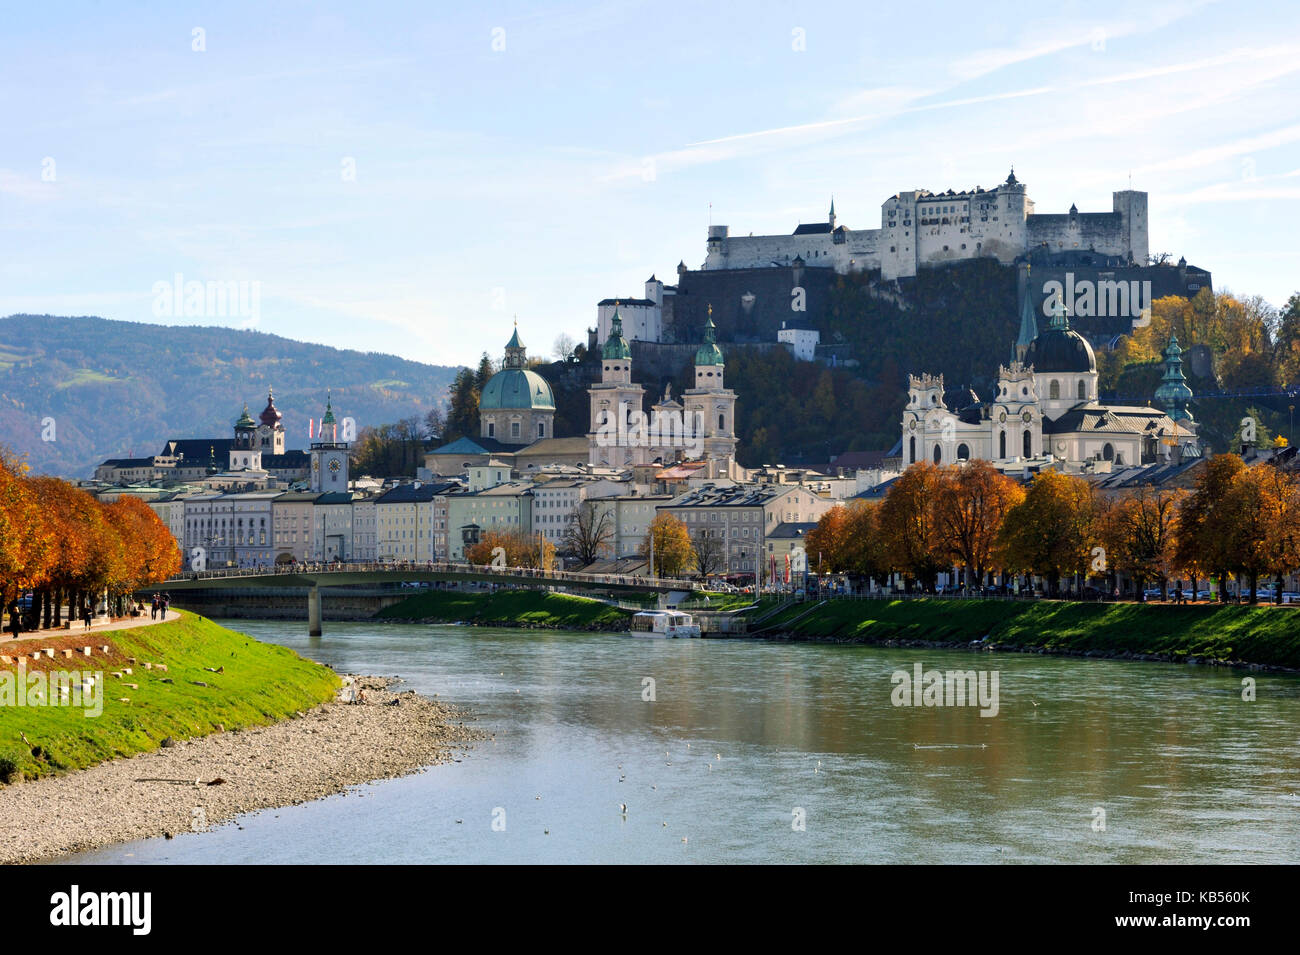 Autriche, Salzbourg, le centre historique classé au Patrimoine Mondial par l'UNESCO, la vieille ville avec la rivière Salzach banques et Château de Hohensalzburg Banque D'Images